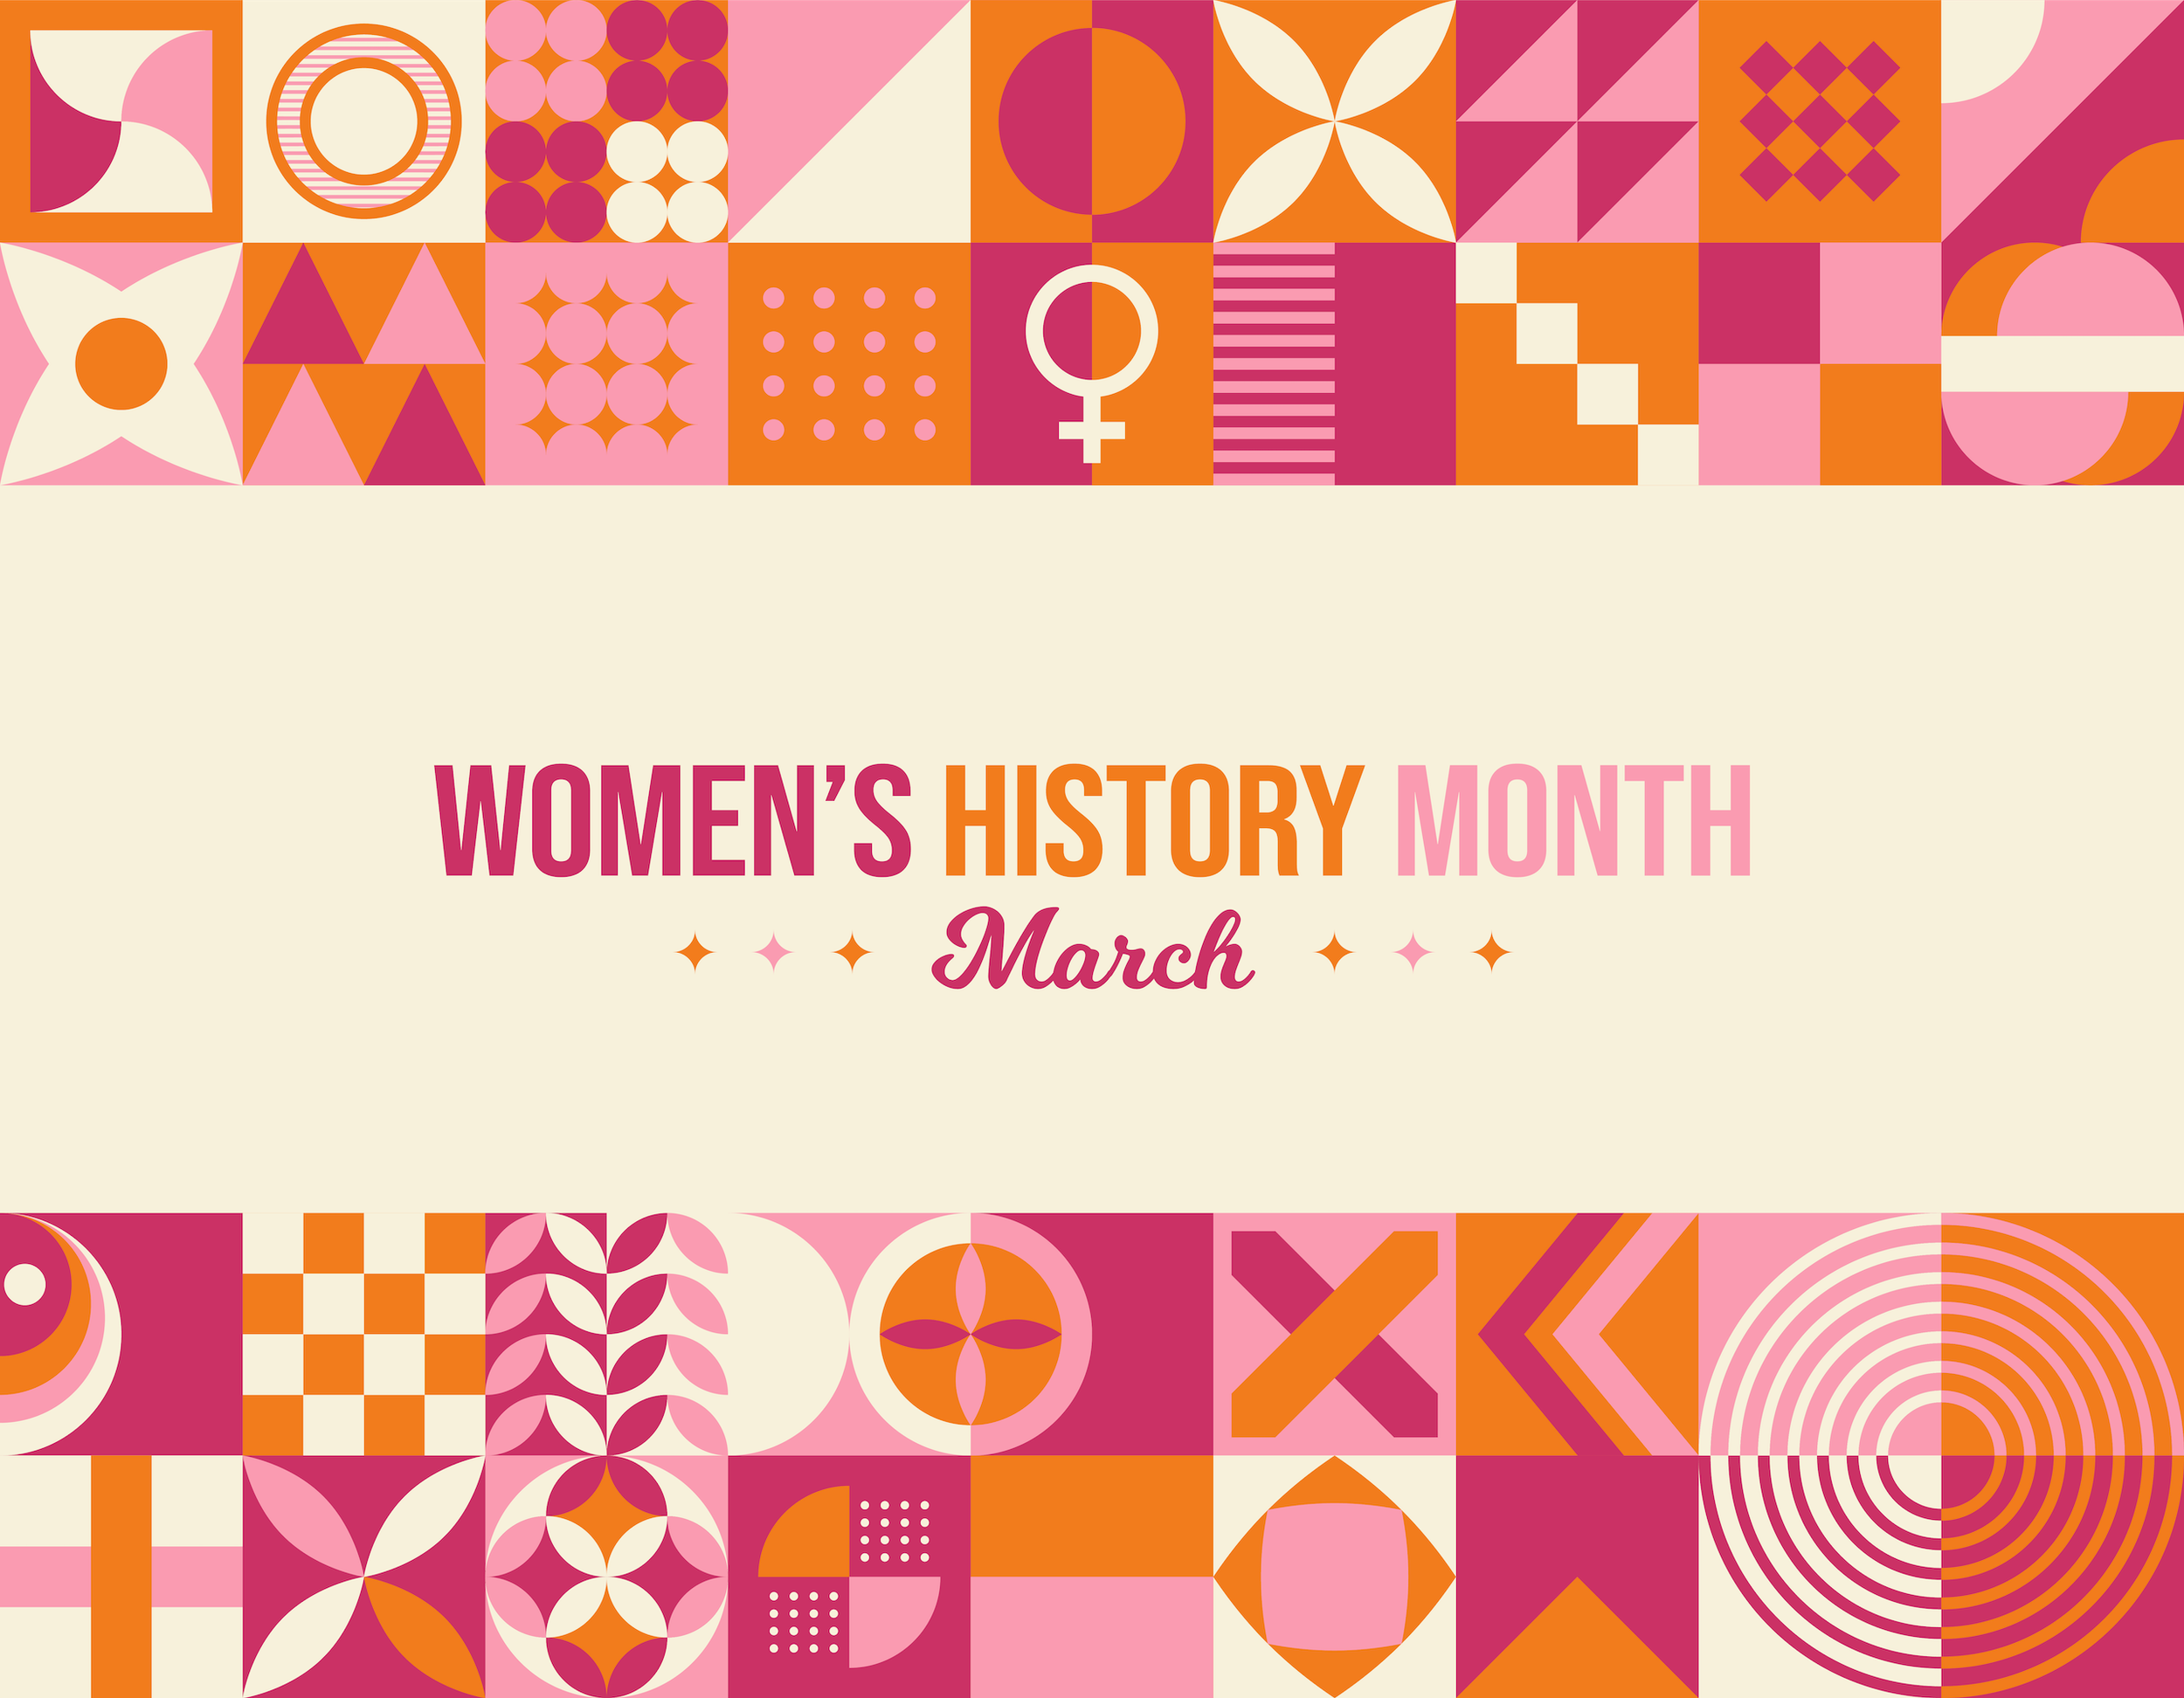 慶祝國際婦女節和婦女歷史月的8種方式